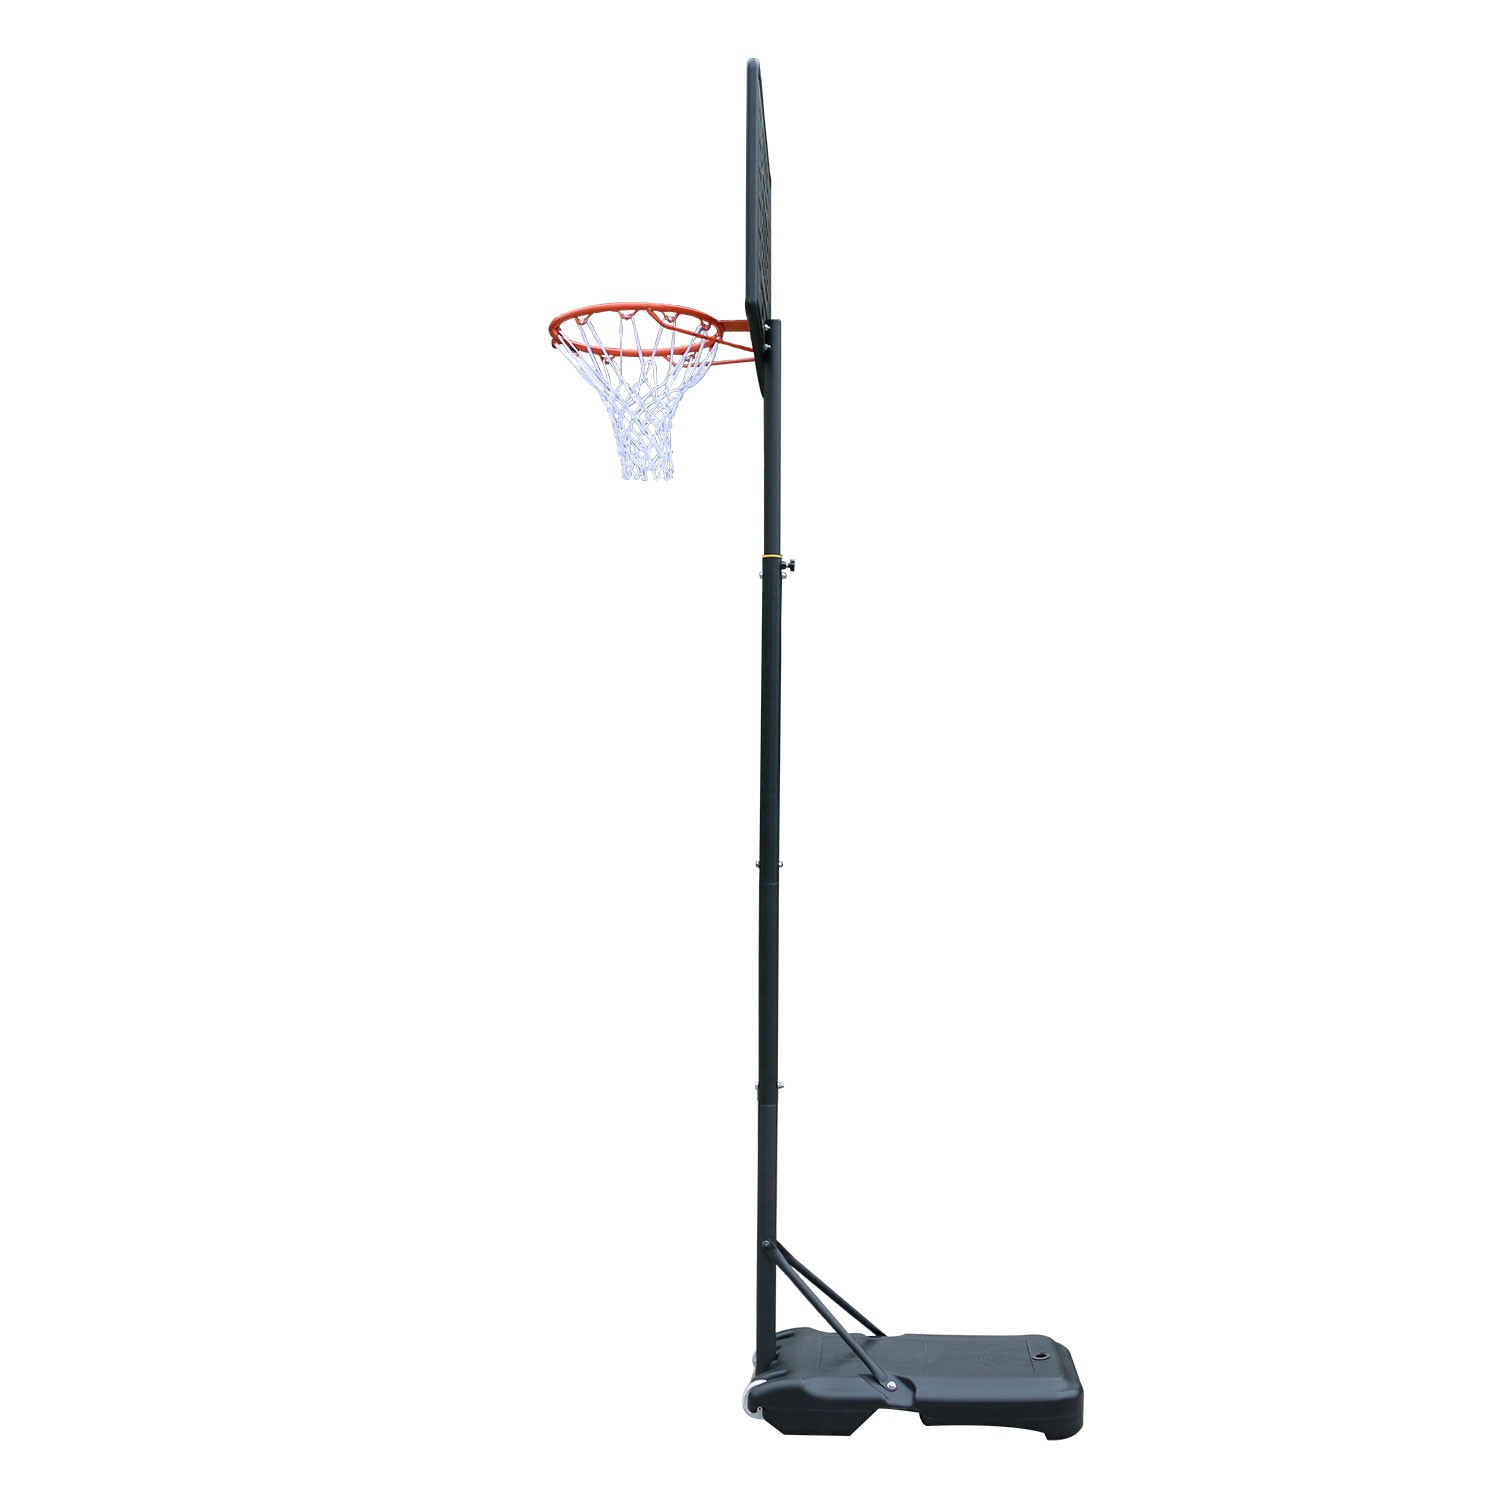 Мобильная баскетбольная стойка DFC 80x58см п/э KIDSD2, изображение 5